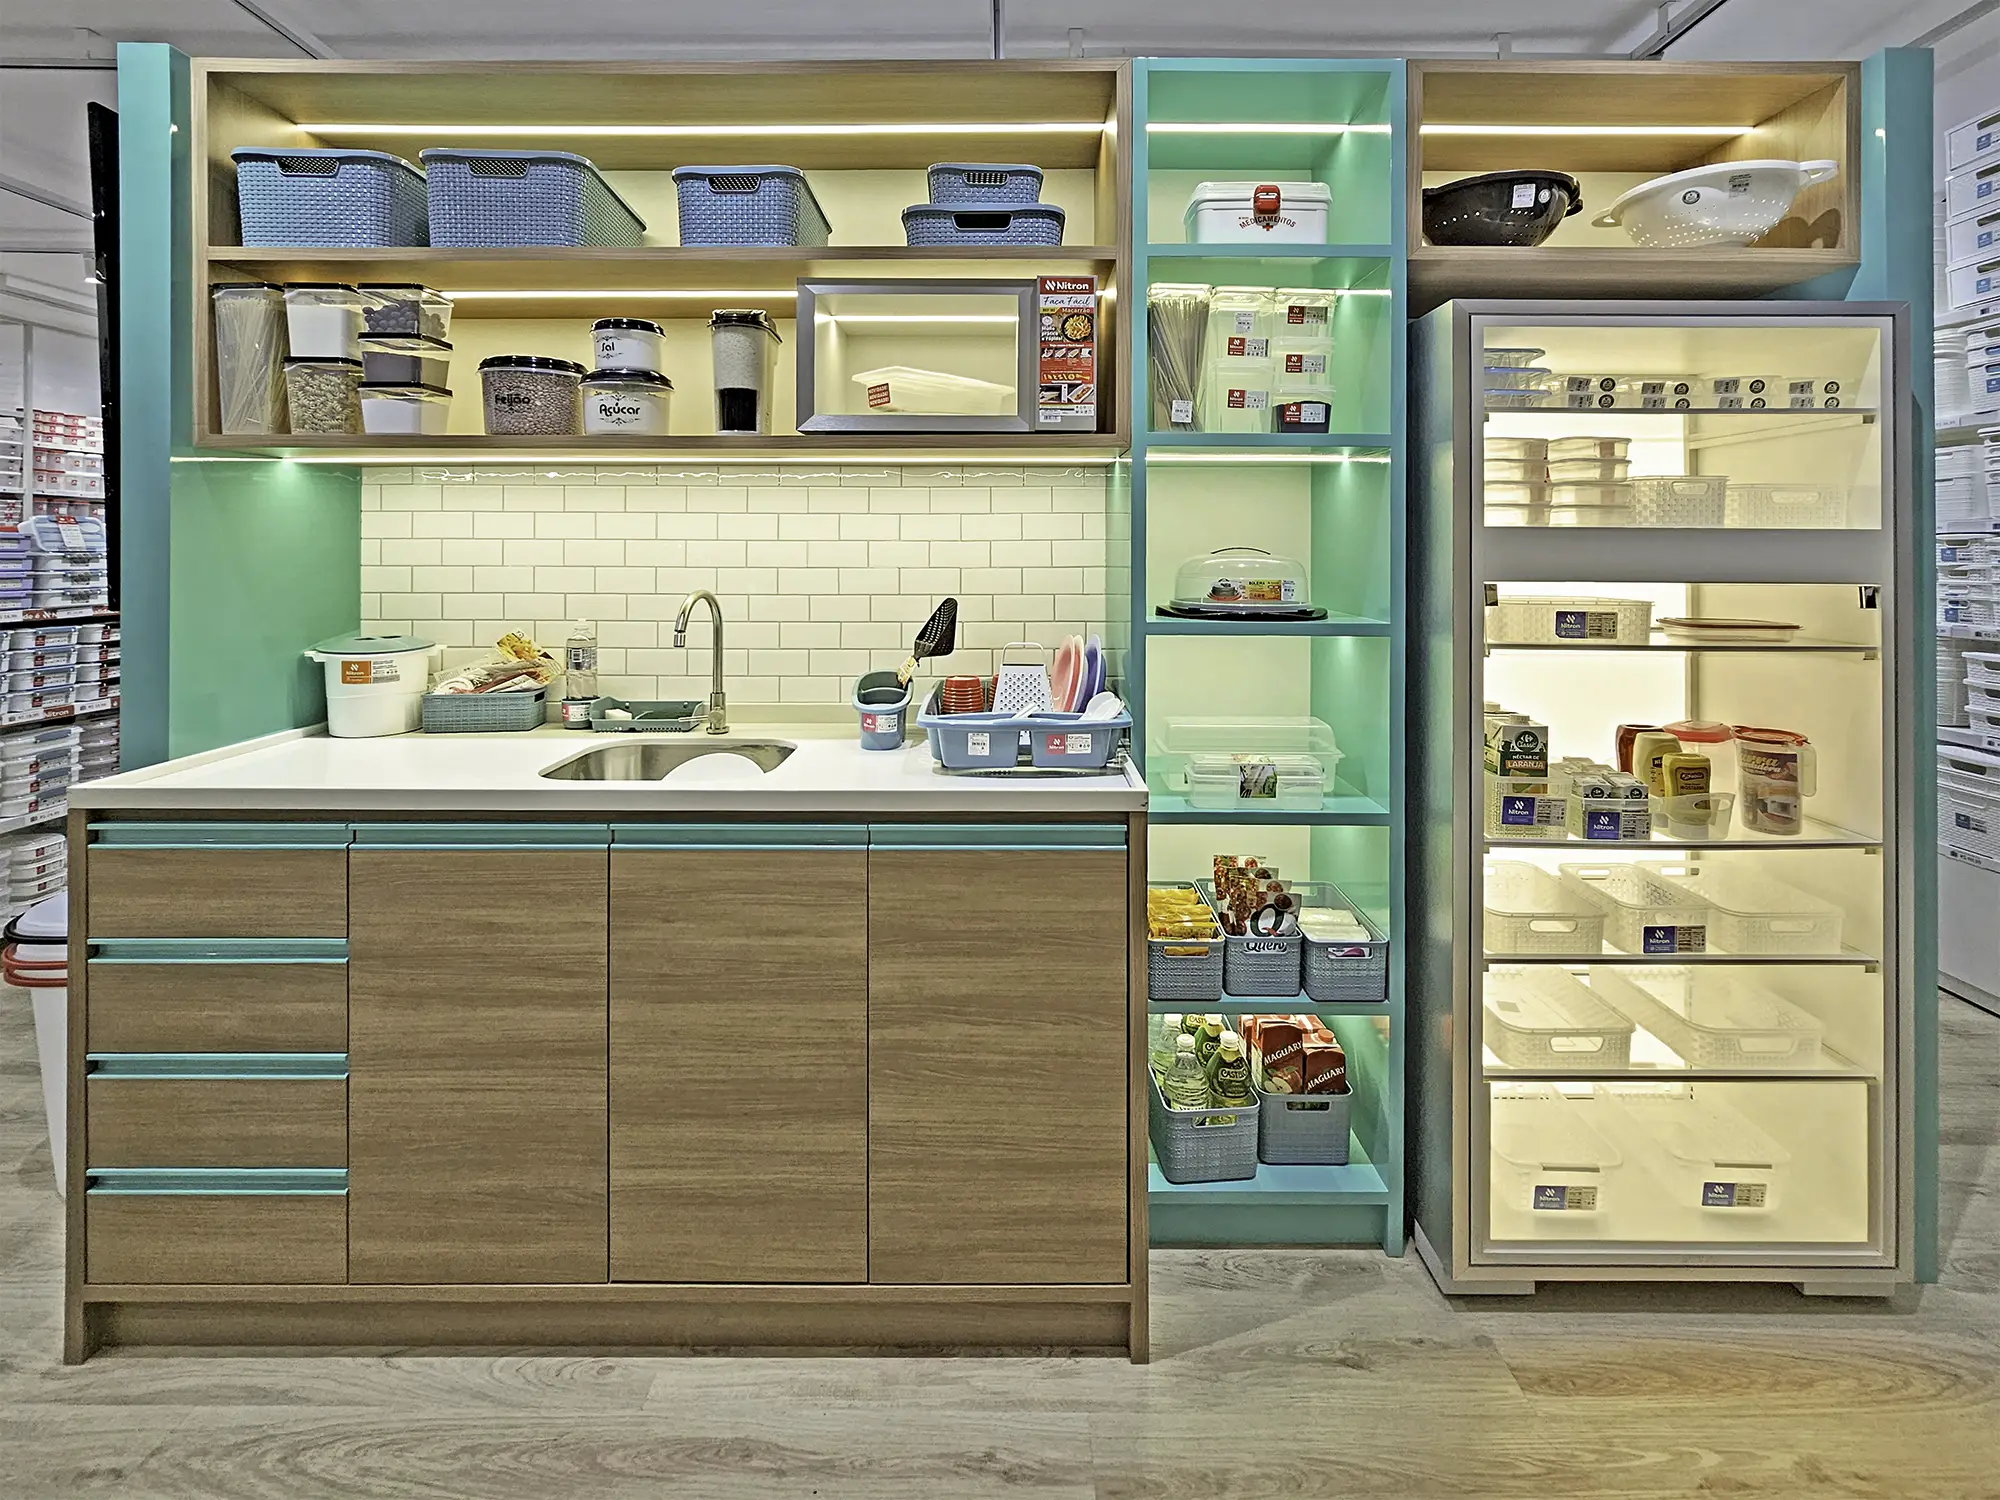 Projeto de arquitetura da ARKT Varejo para a loja de utilidades domésticas e produtos para casa, Nitron.